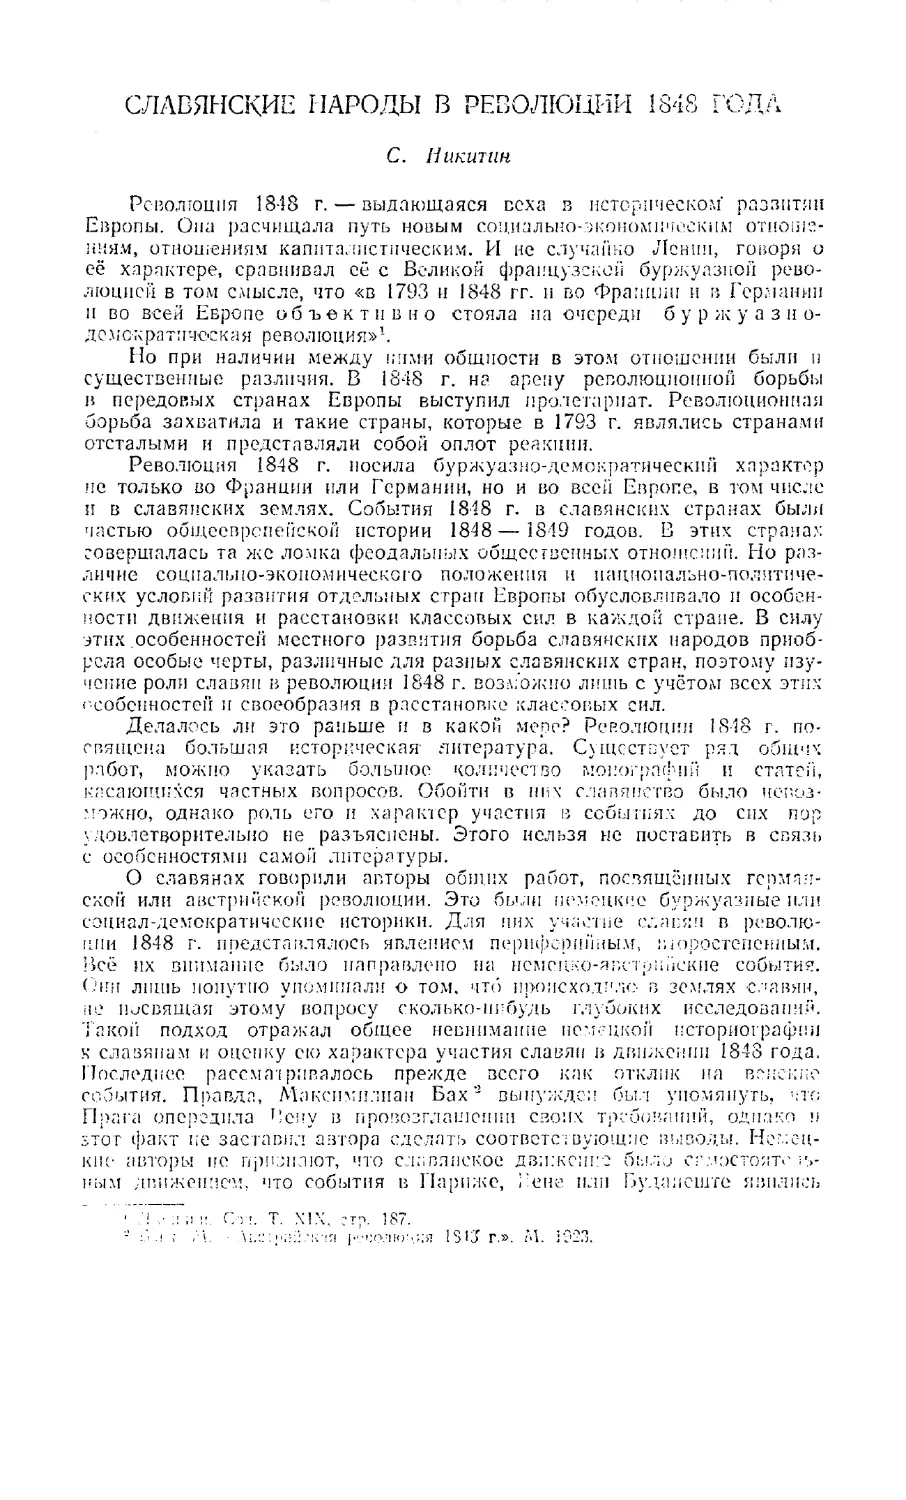 Никитин С. — Славянские народы в революции 1848 года